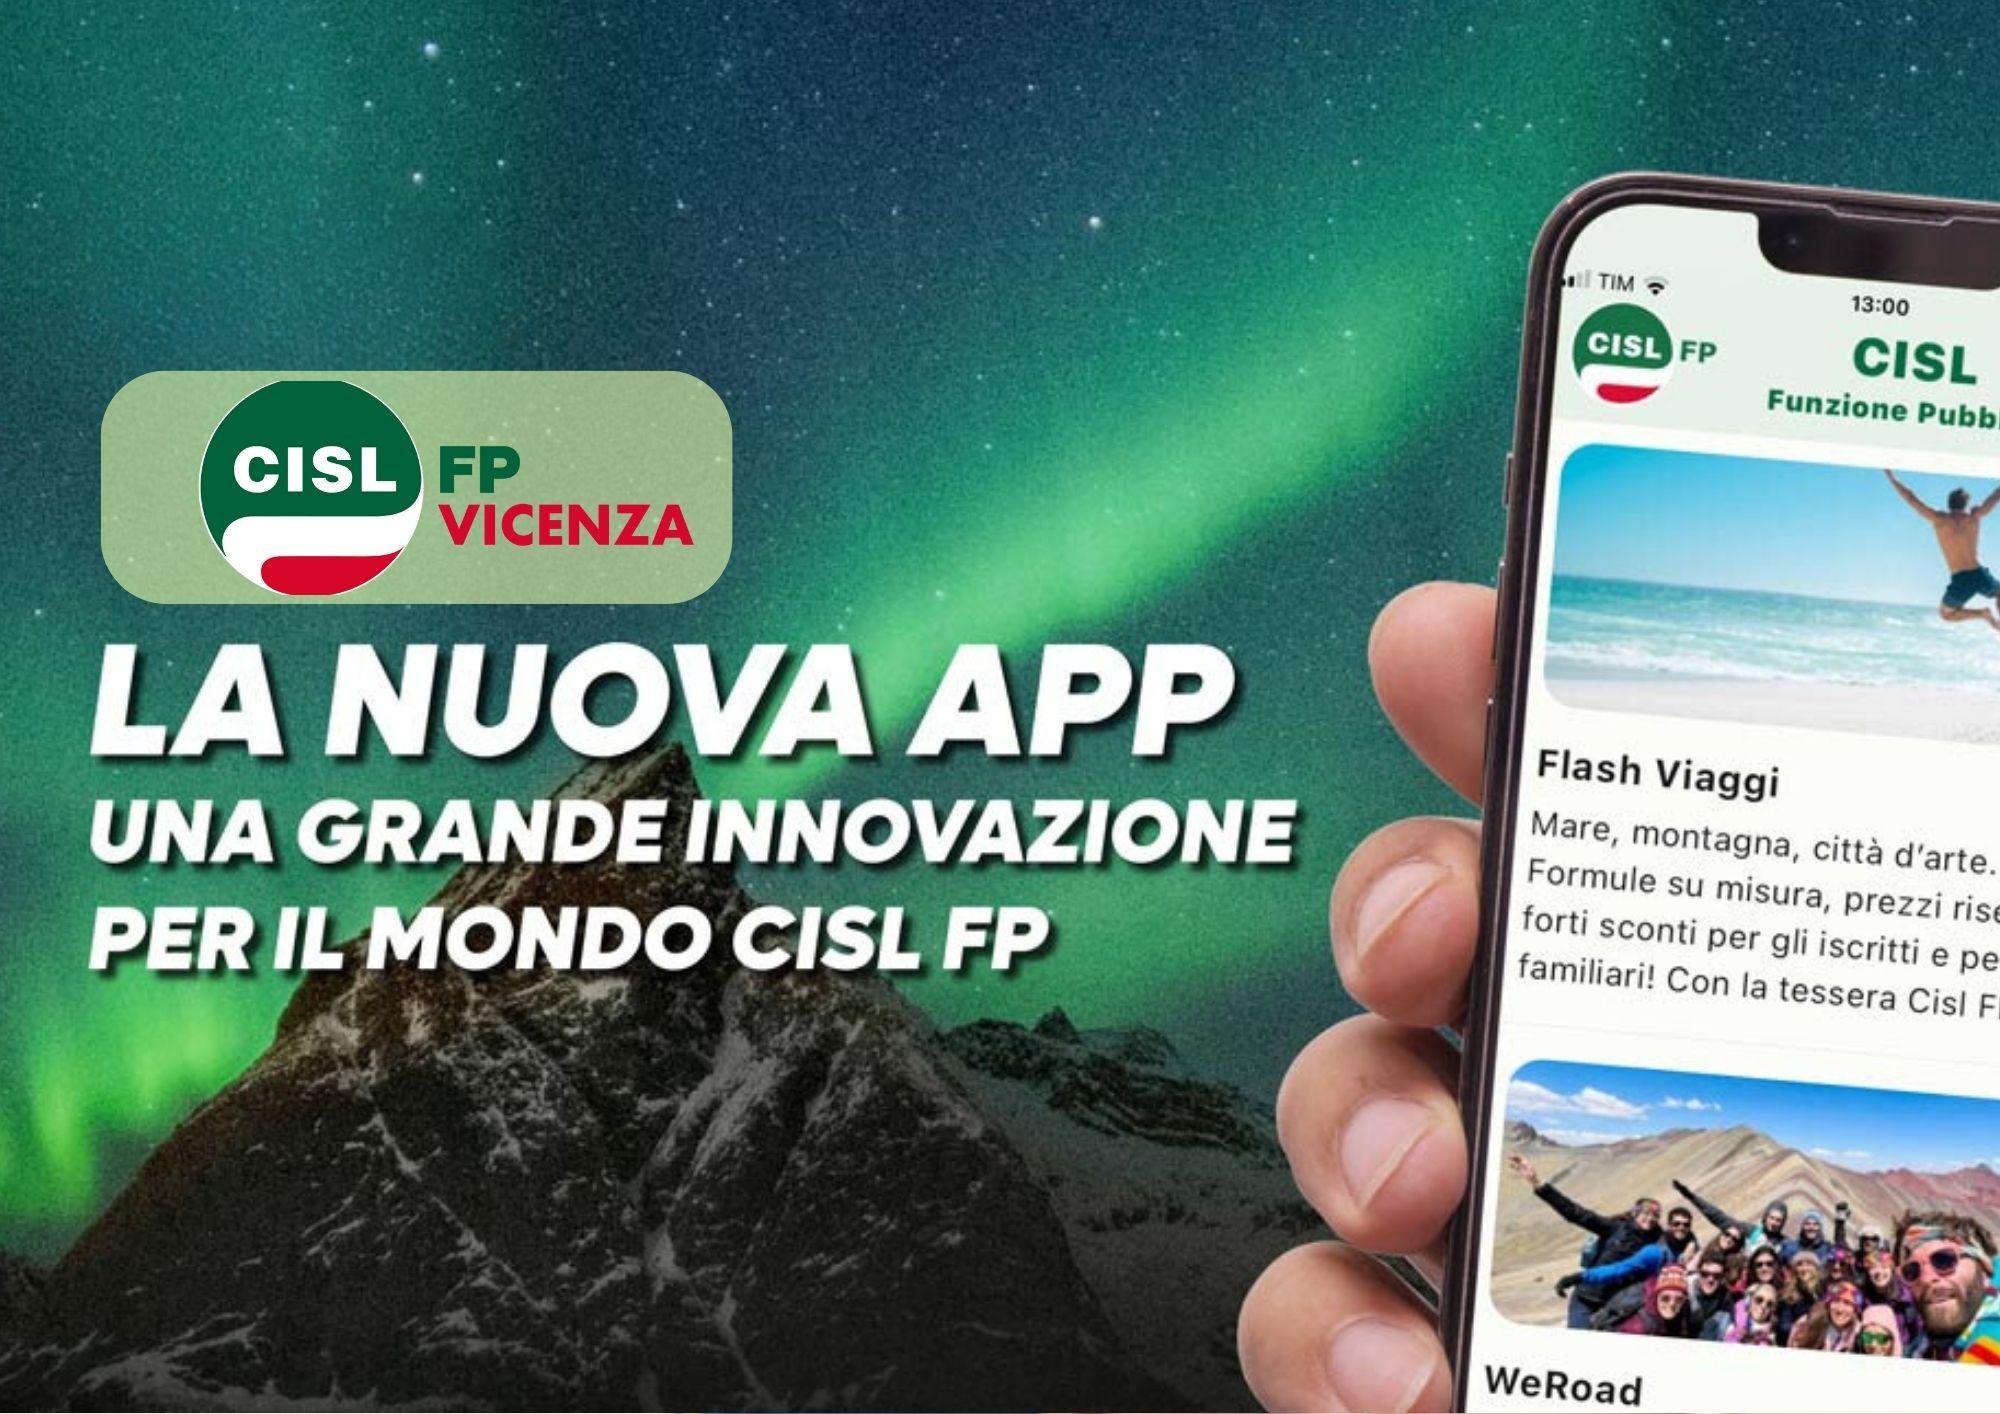 CISL FP Vicenza. Scarica subito la App CISL FP sul tuo smartphone. Resta connesso. Fallo da qui!